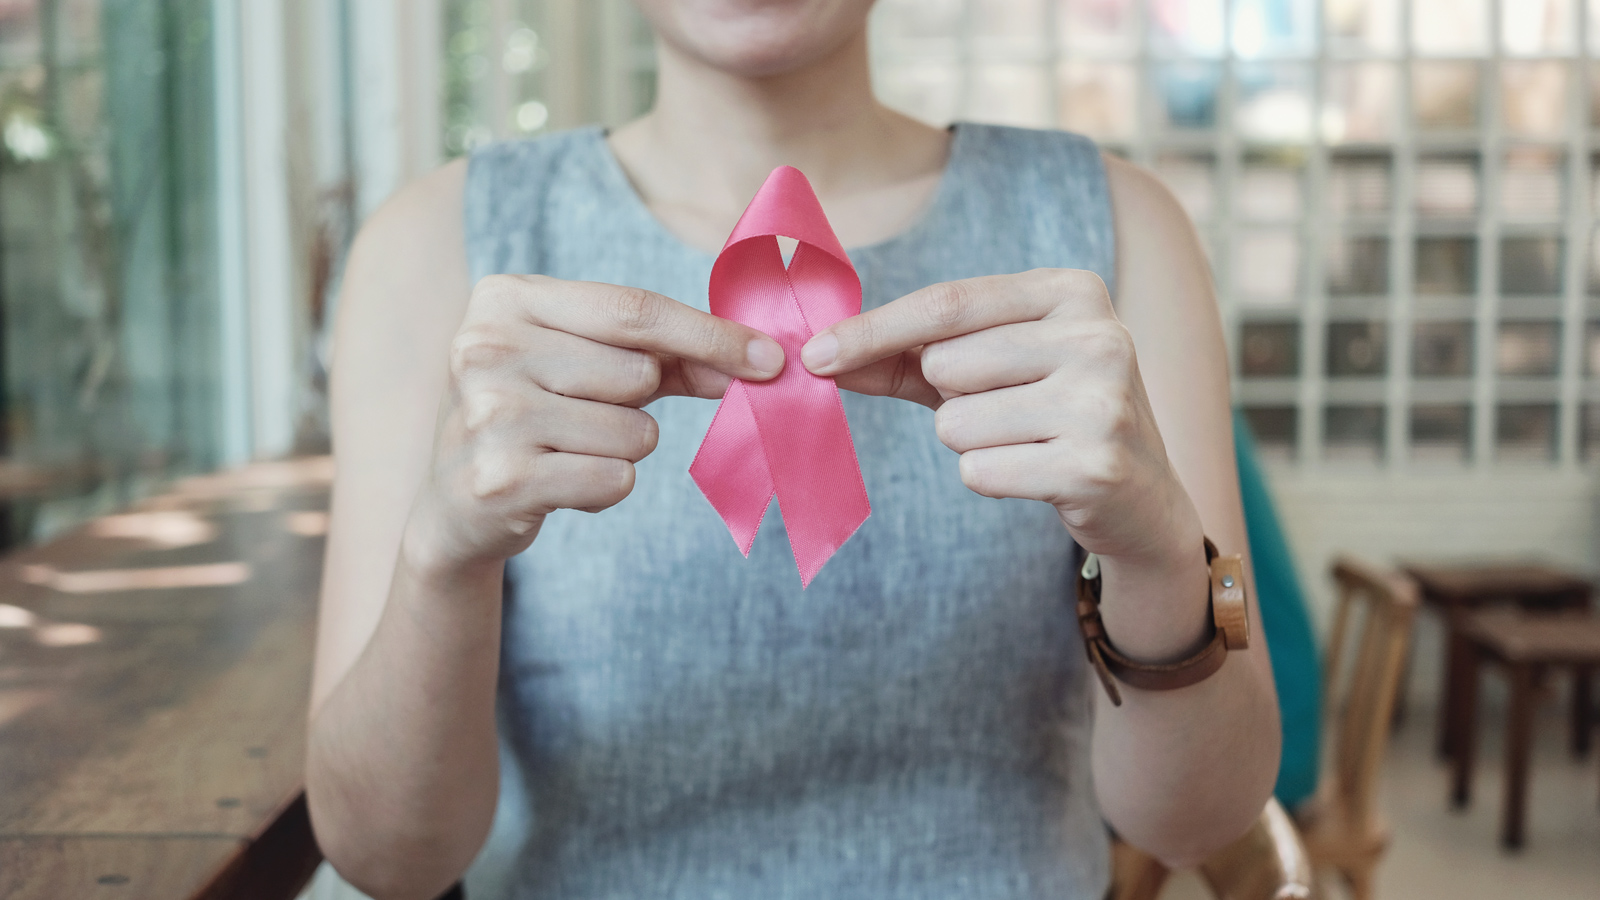 Ung thư vú là bệnh phổ biến nhất trong các loại ung thư. Đâu là các dấu hiệu, diễn tiến, các đối tượng có nguy cơ cao?